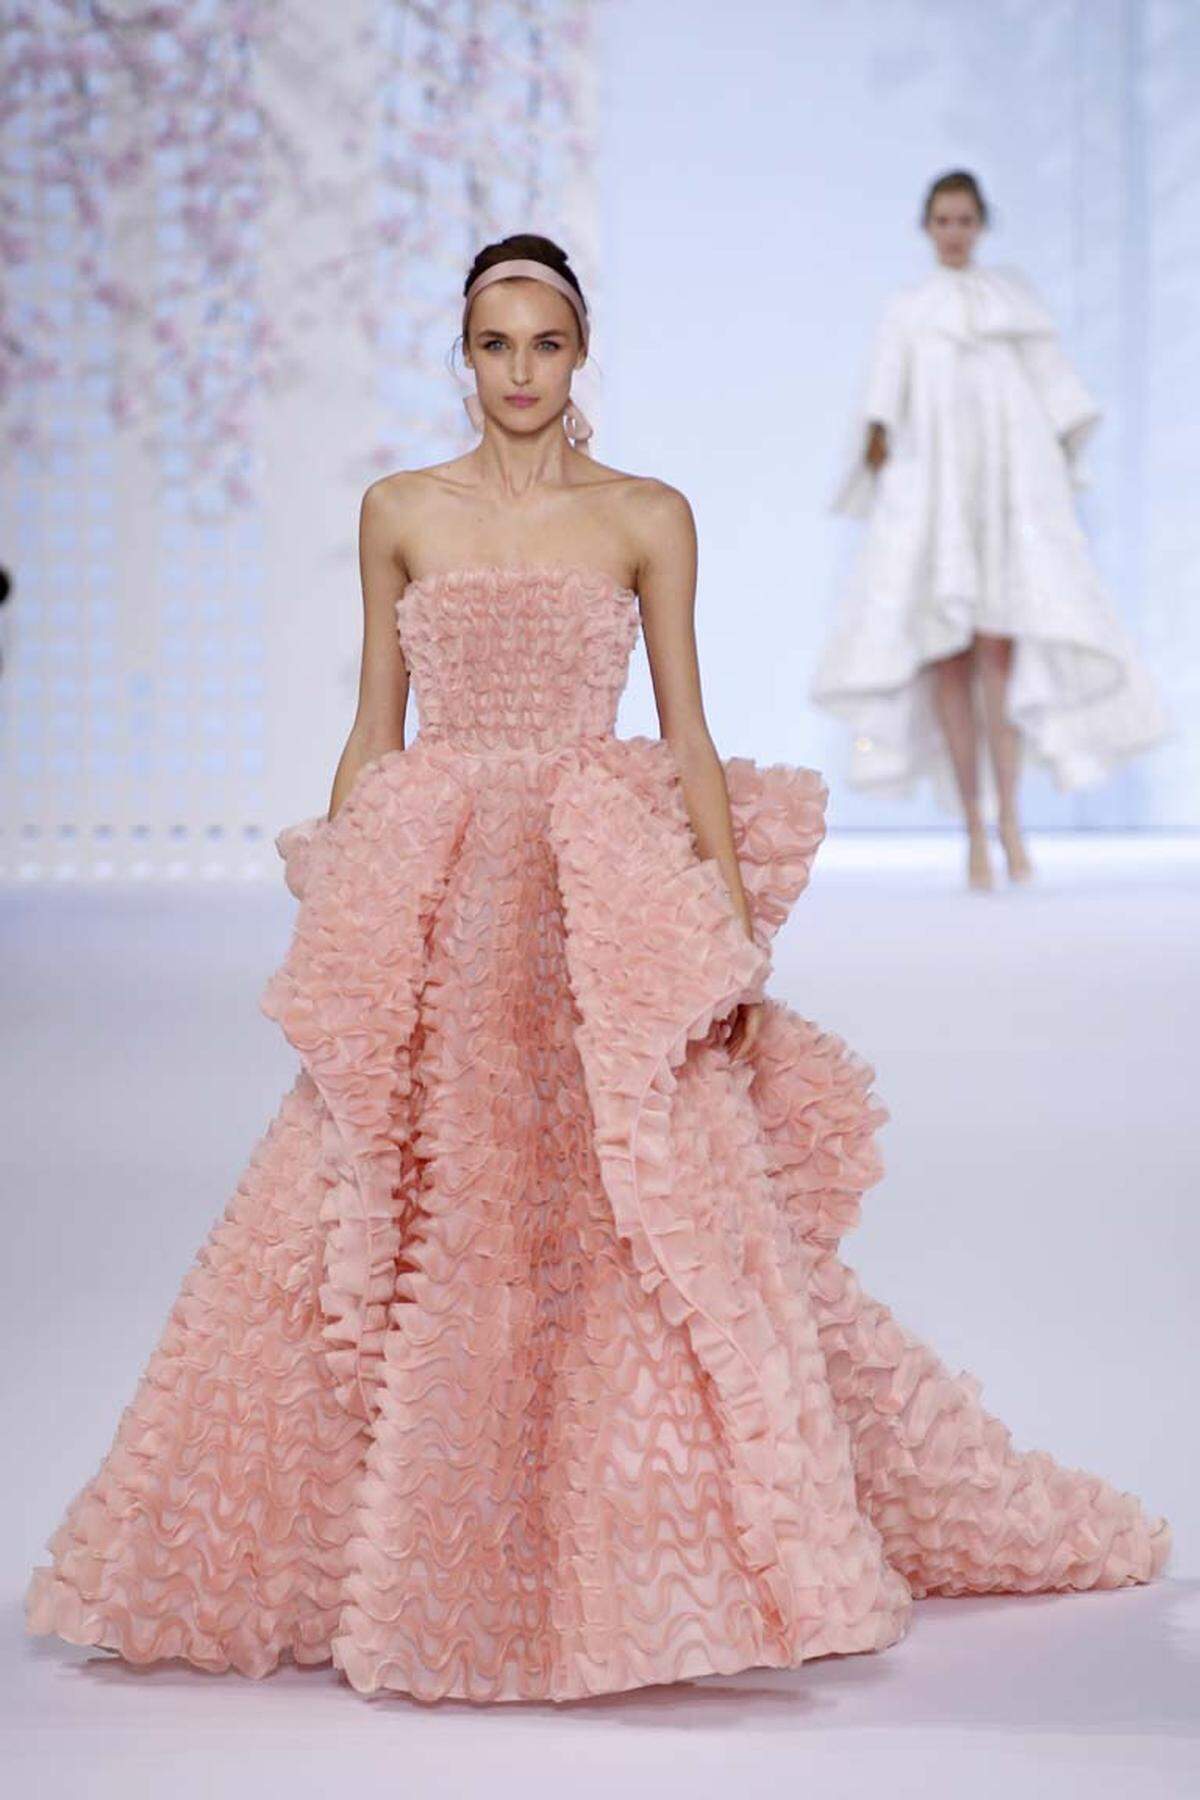 Märchenhaft zeigte sich die Haute Couture Kollektion von Ralph Russo, der von Rüschen in Pastellfarben nicht genug bekommen konnte.